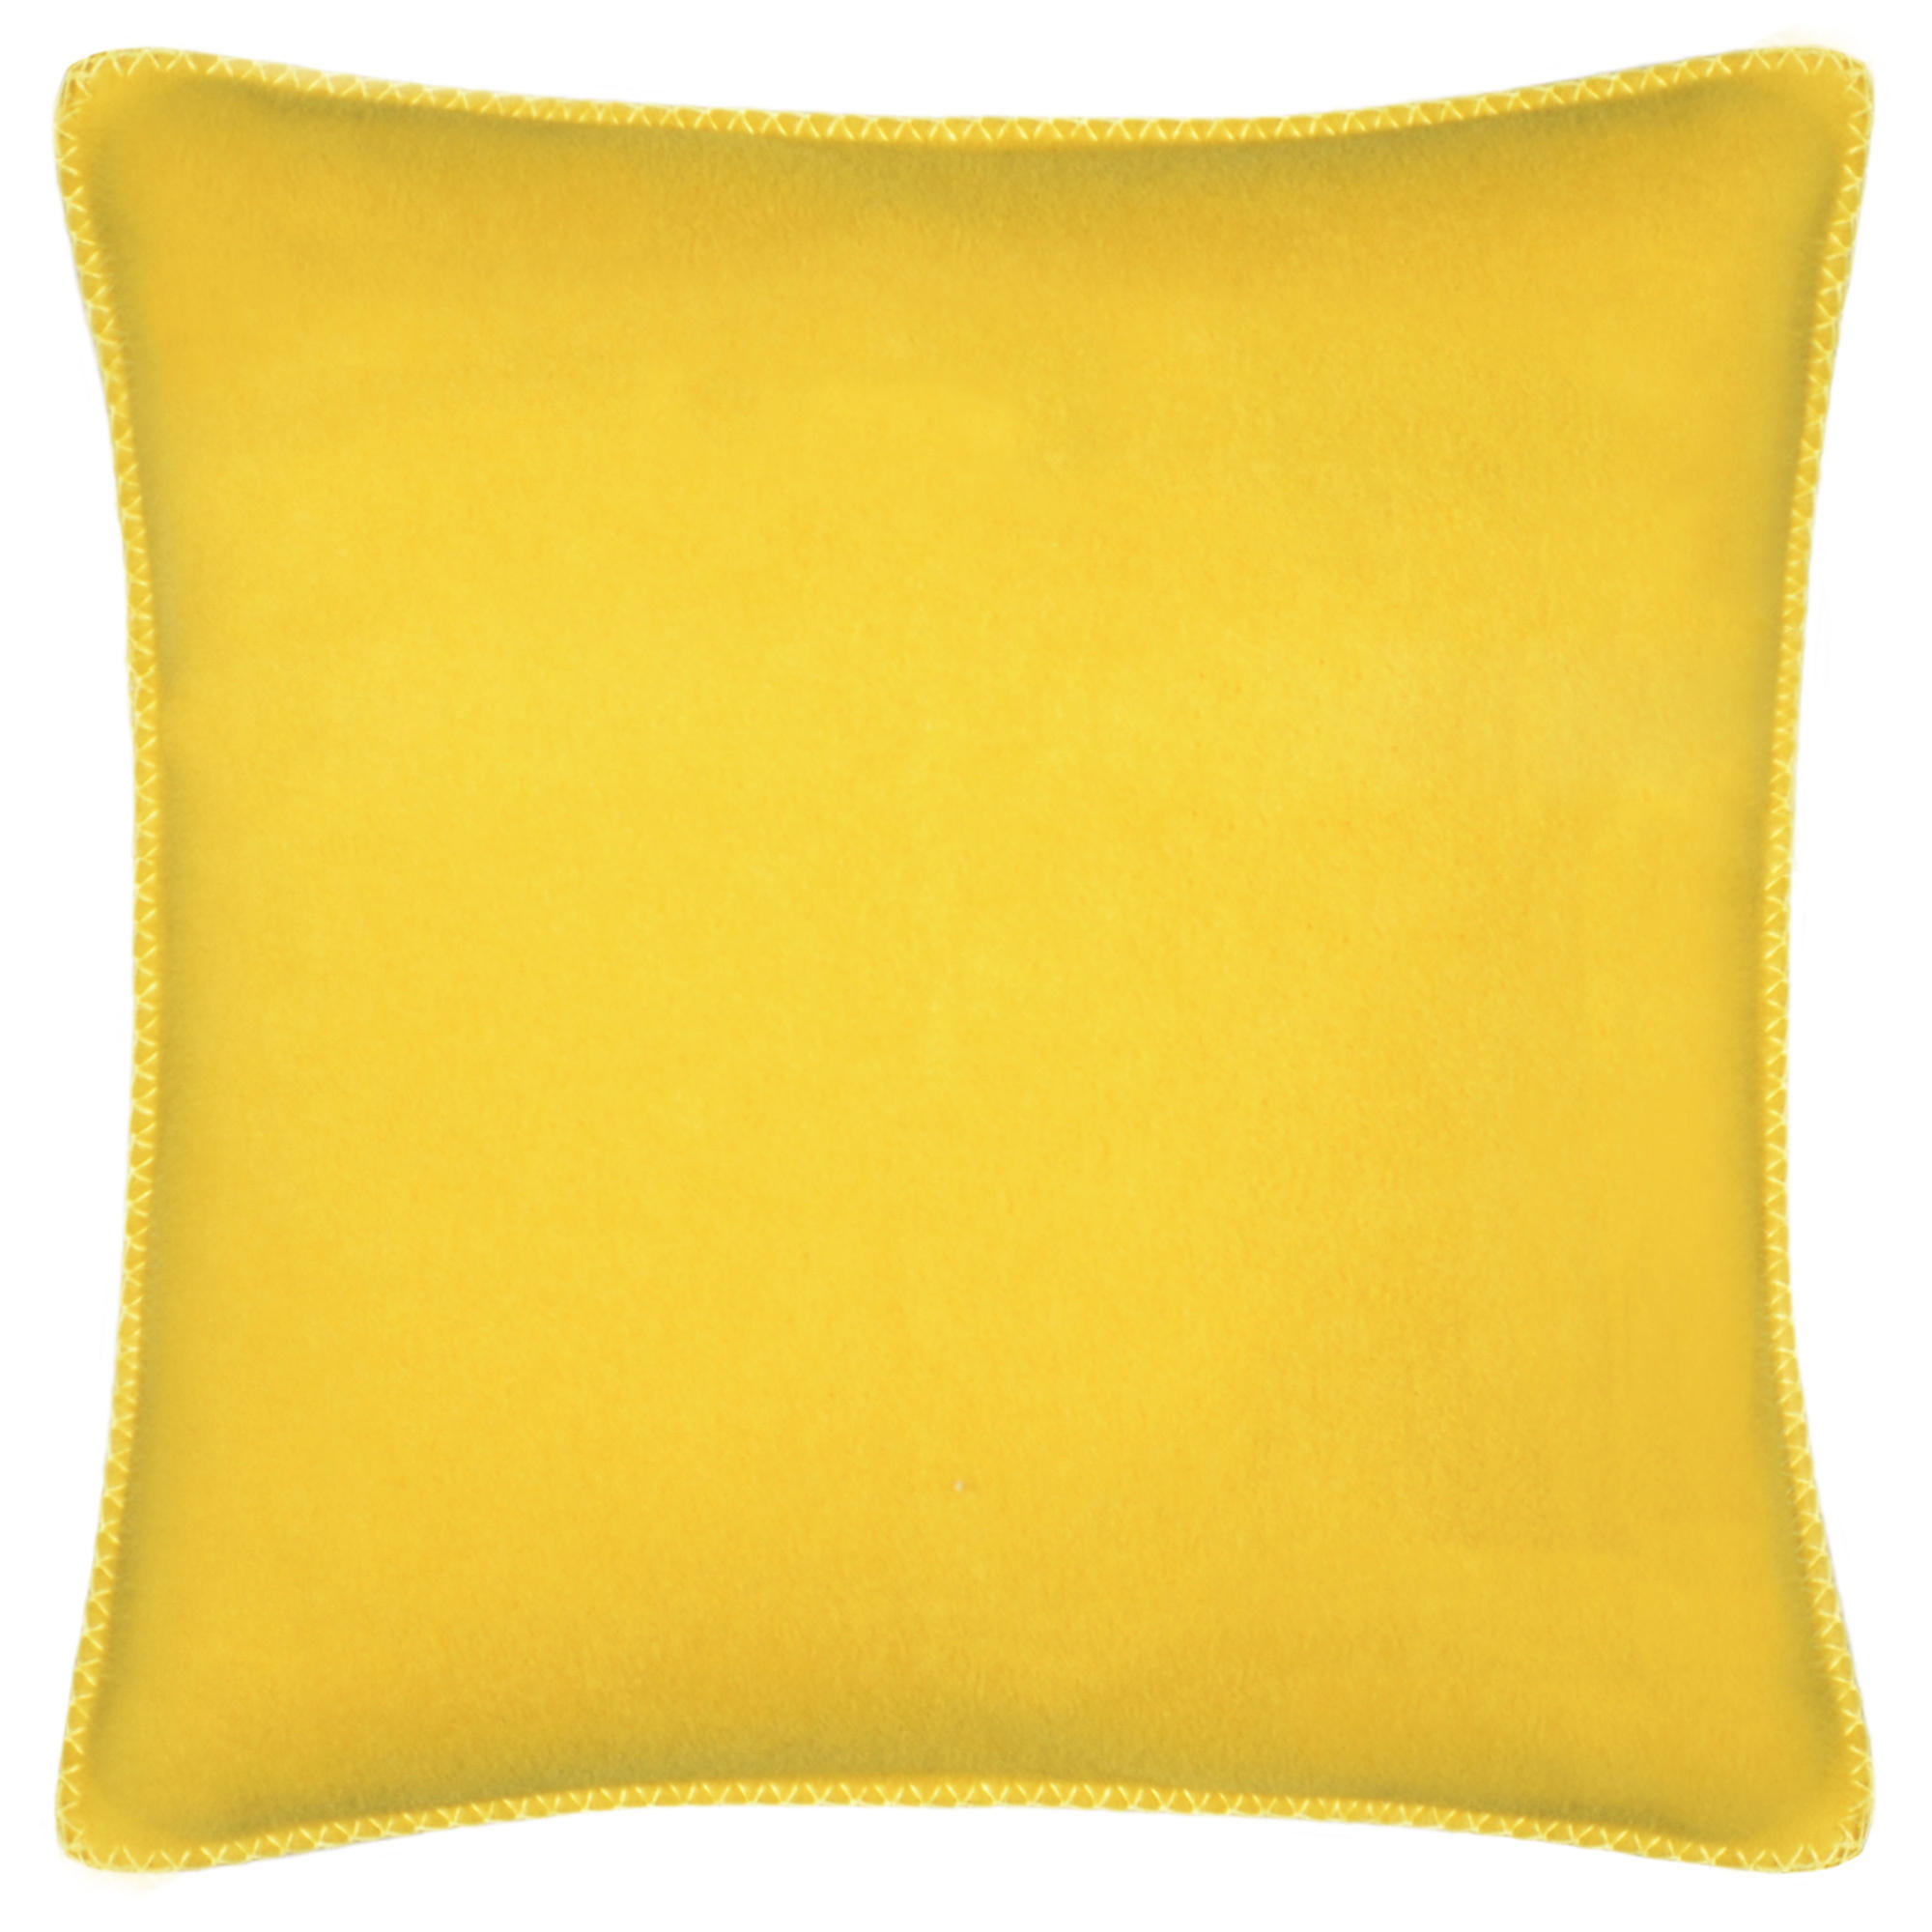 KISSENHÜLLE Soft-Fleece 50/50 cm  - Currygelb, Basics, Textil (50/50cm) - Zoeppritz